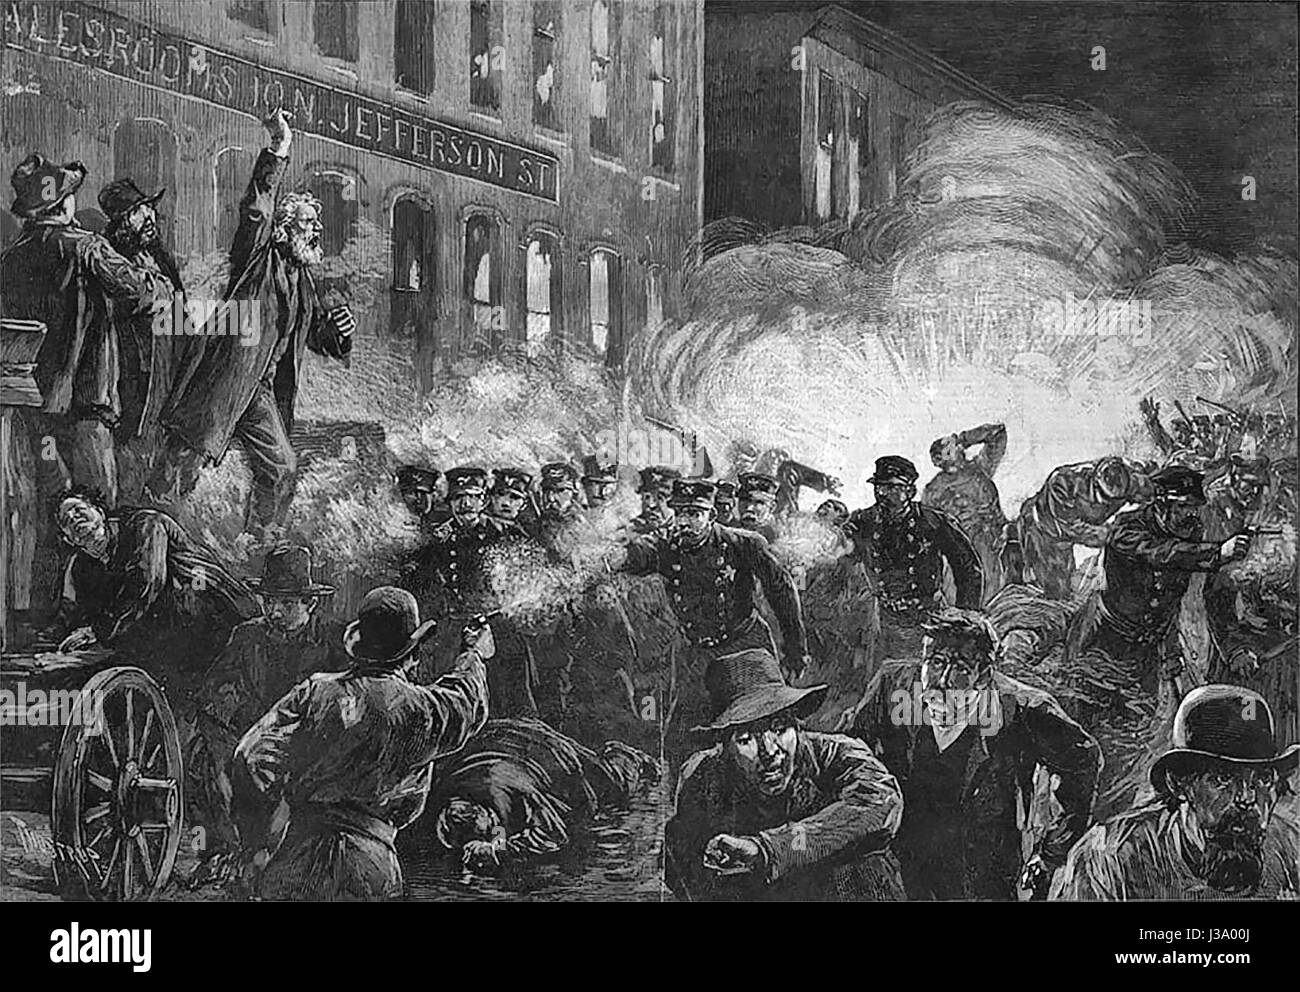 El Haymarket Riot - 15 de mayo de 1886. Este grabado de 1886 fue la más amplia imagen reproducida por el asunto de Haymarket. Se muestra incorrectamente Fielden hablando, la explosión de bombas y los motines comienzan simultáneamente. Foto de stock